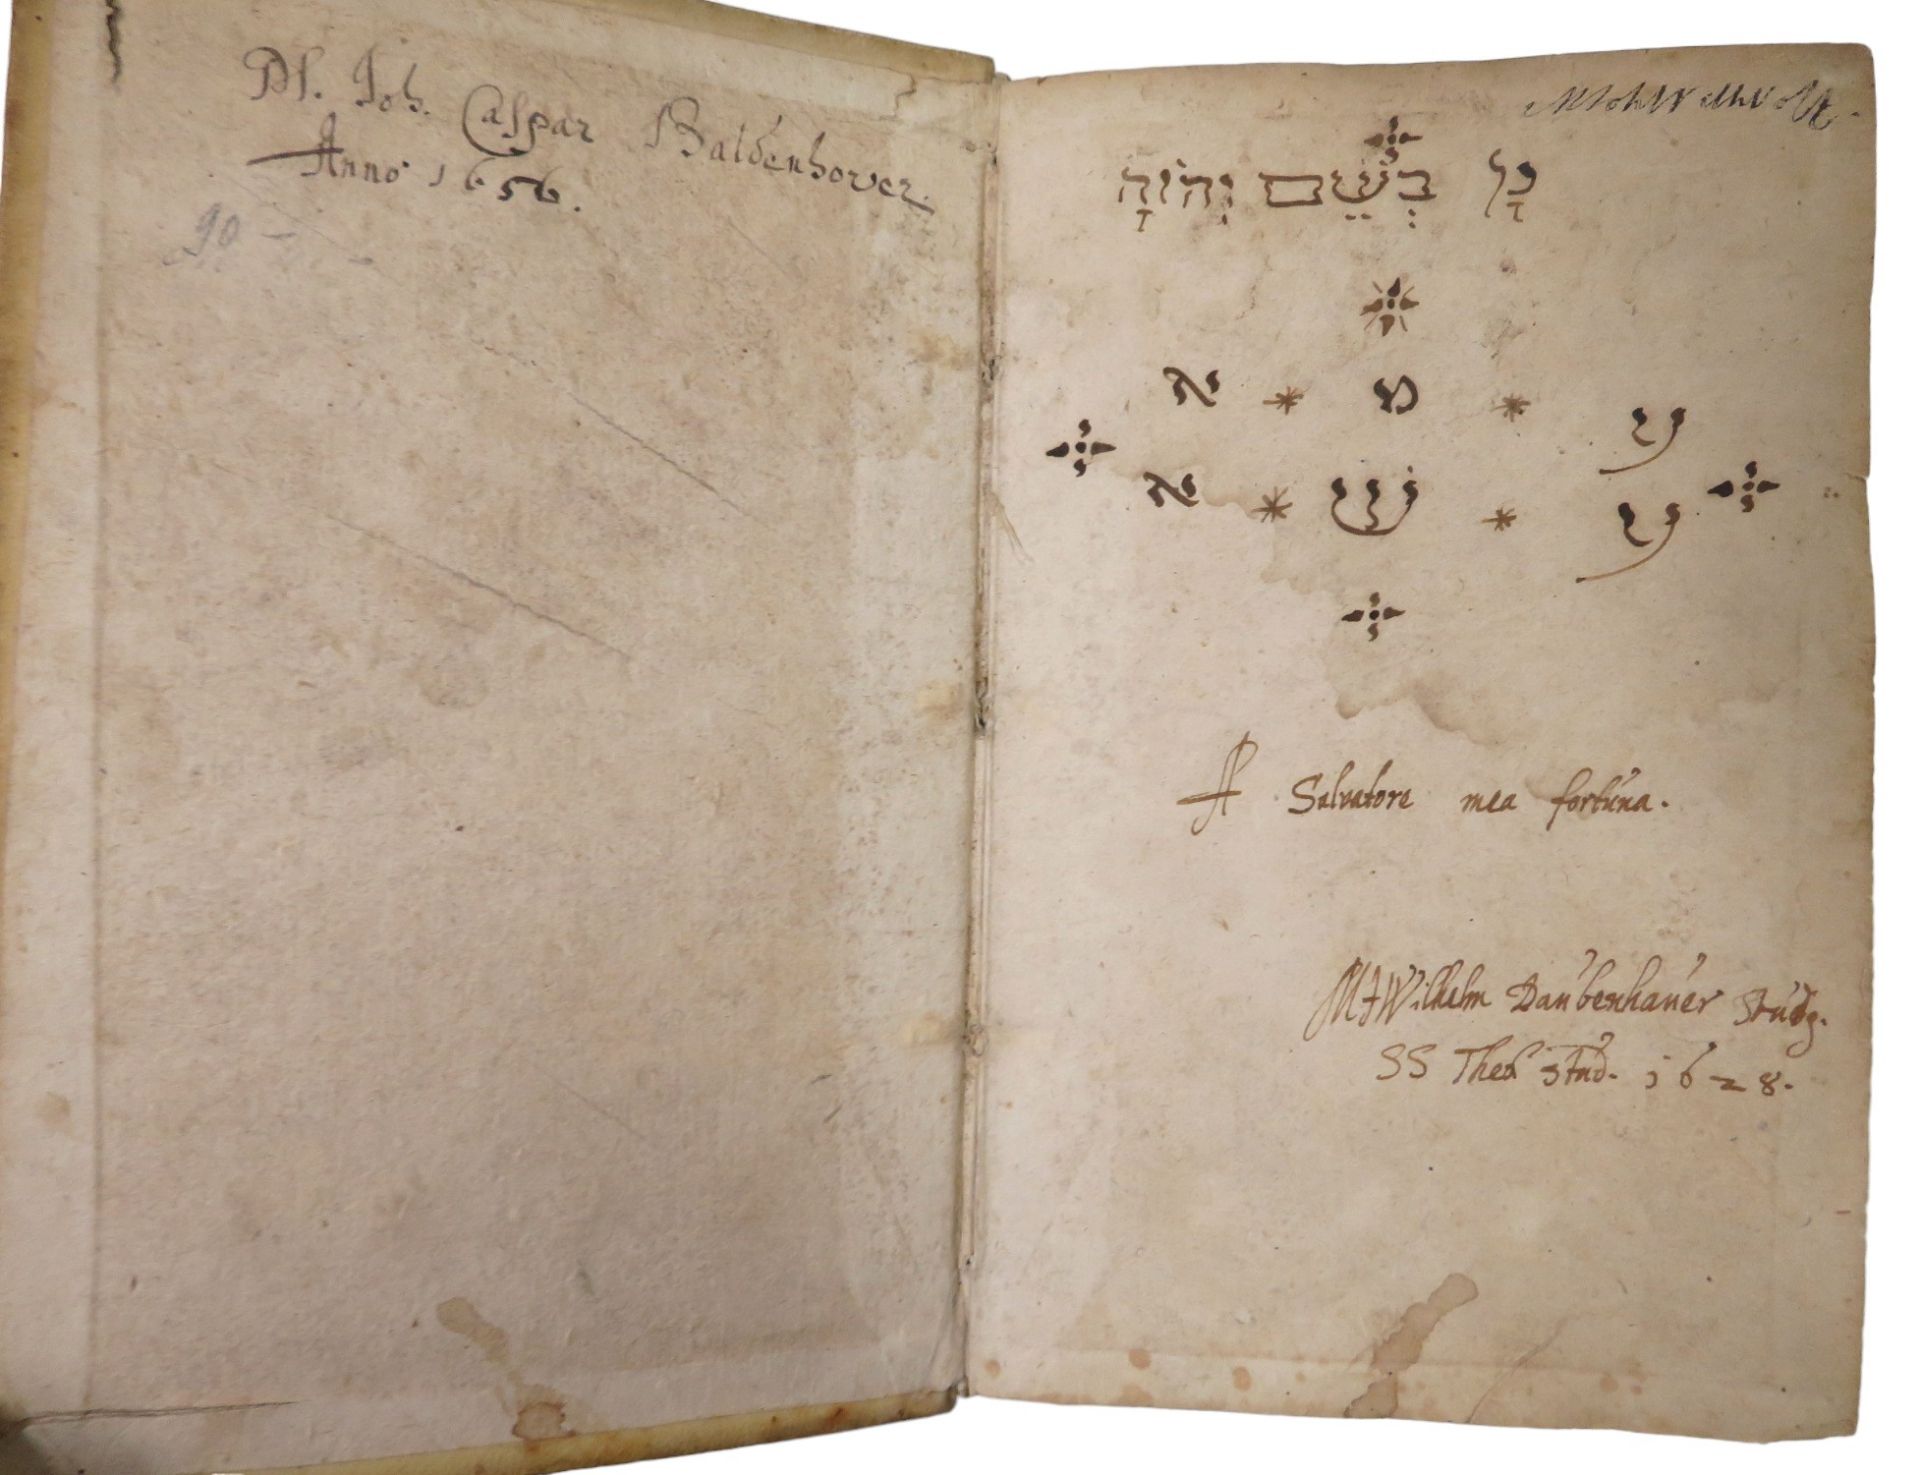 Bd., Sleidani, Ioannis: Commentatoriorvm De Statv Religionis Et Reipvblicae. Wohl 16. Jahrhundert, - Image 2 of 3